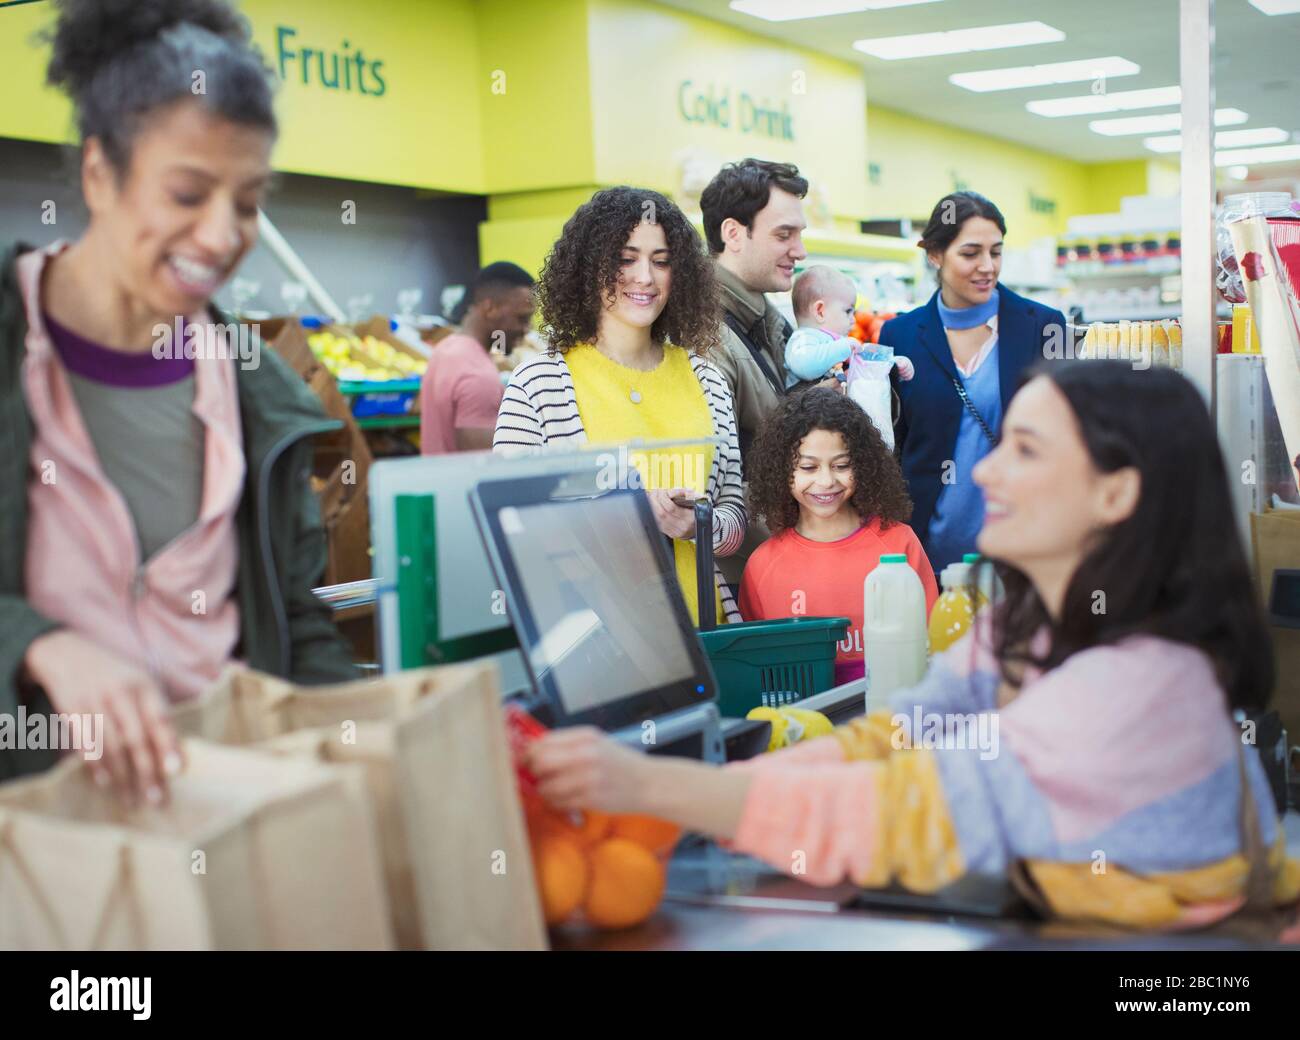 Cassiere che aiuta i clienti al checkout supermercato Foto Stock